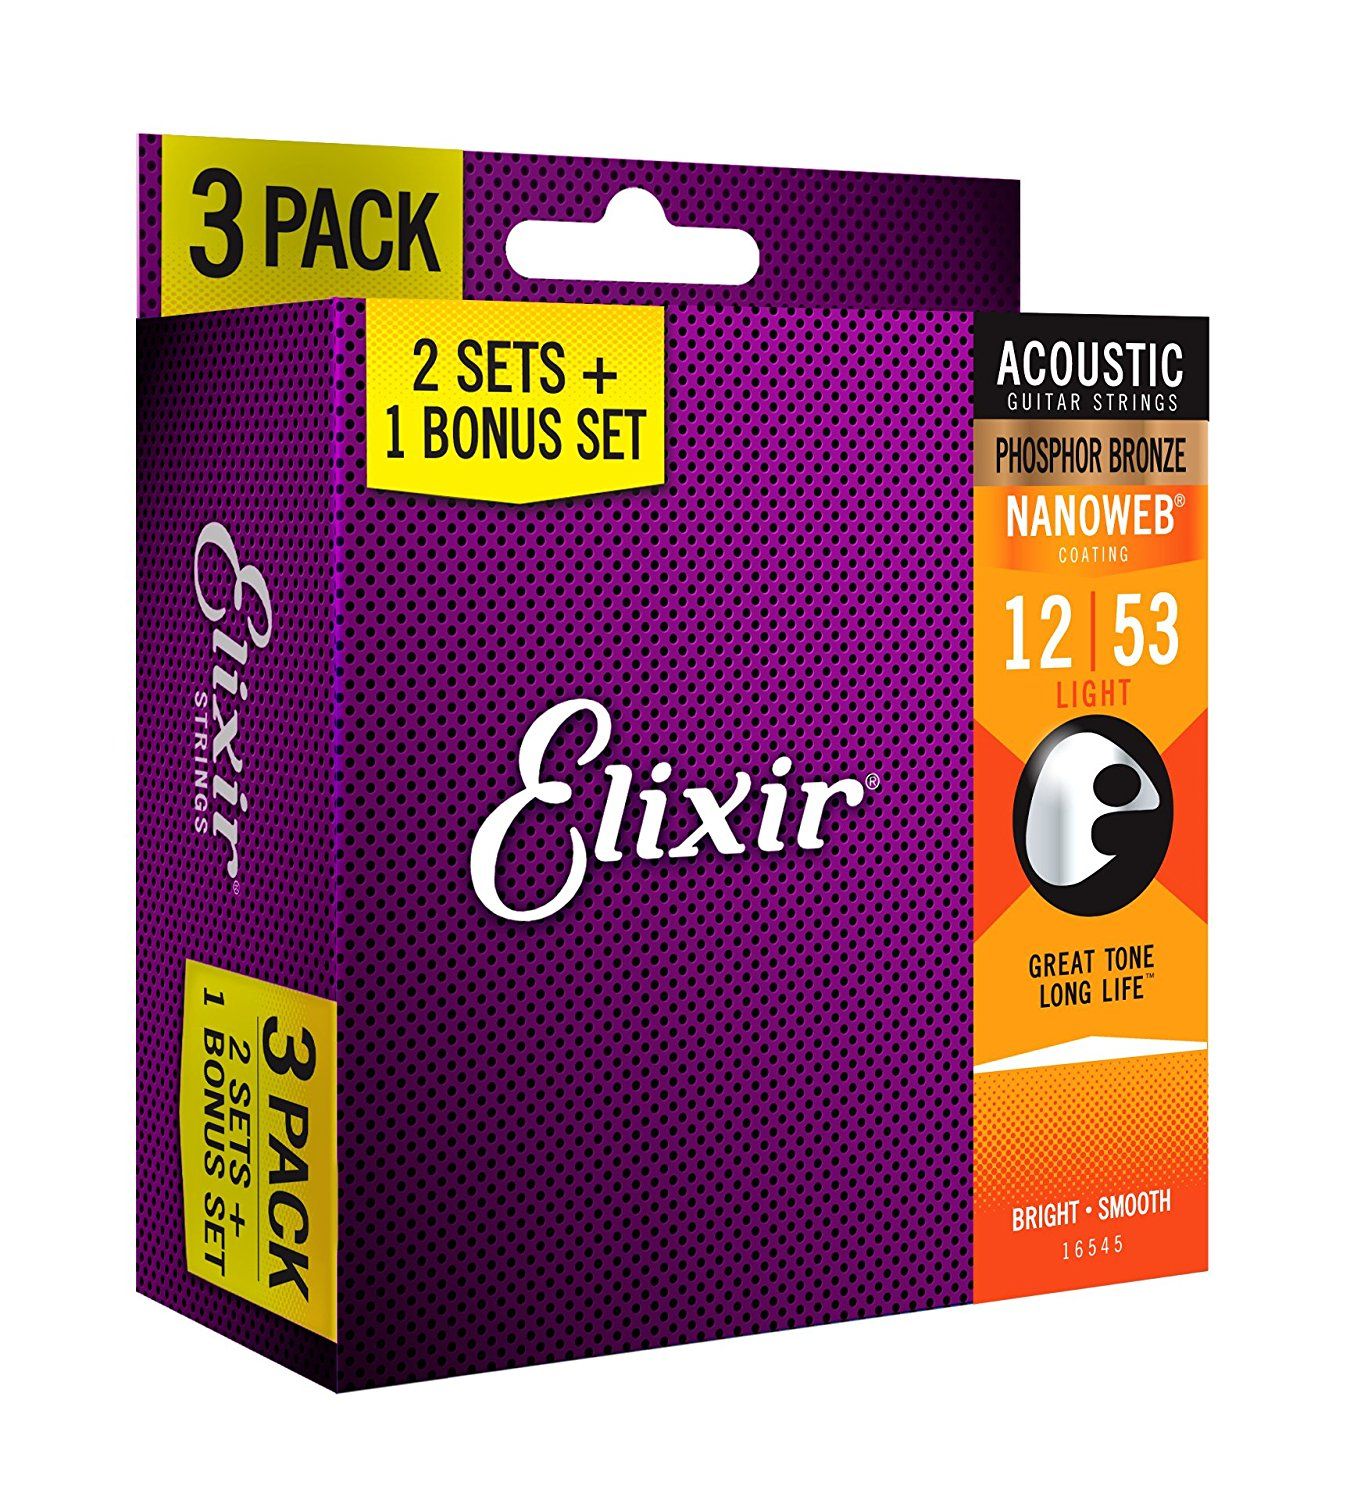 Струны для акустической гитары Elixir 16545 (3 Pack) 12-53